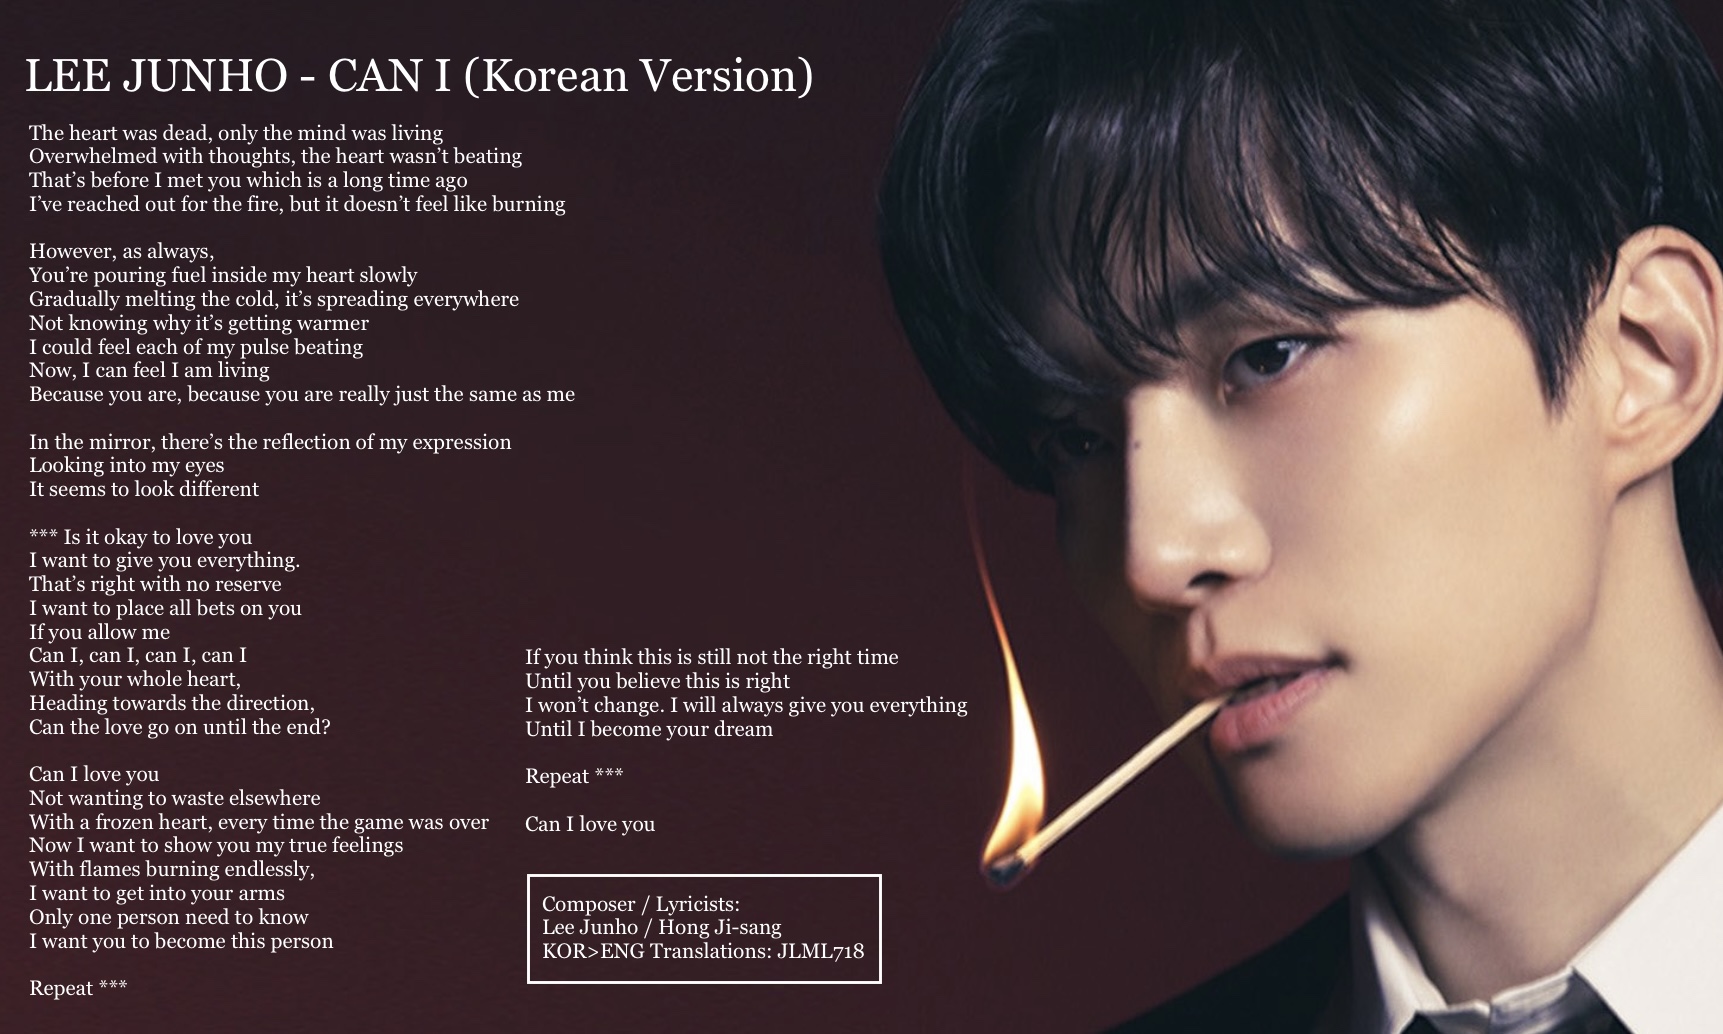 korean lyrics – JLML718's 2PM BLOG